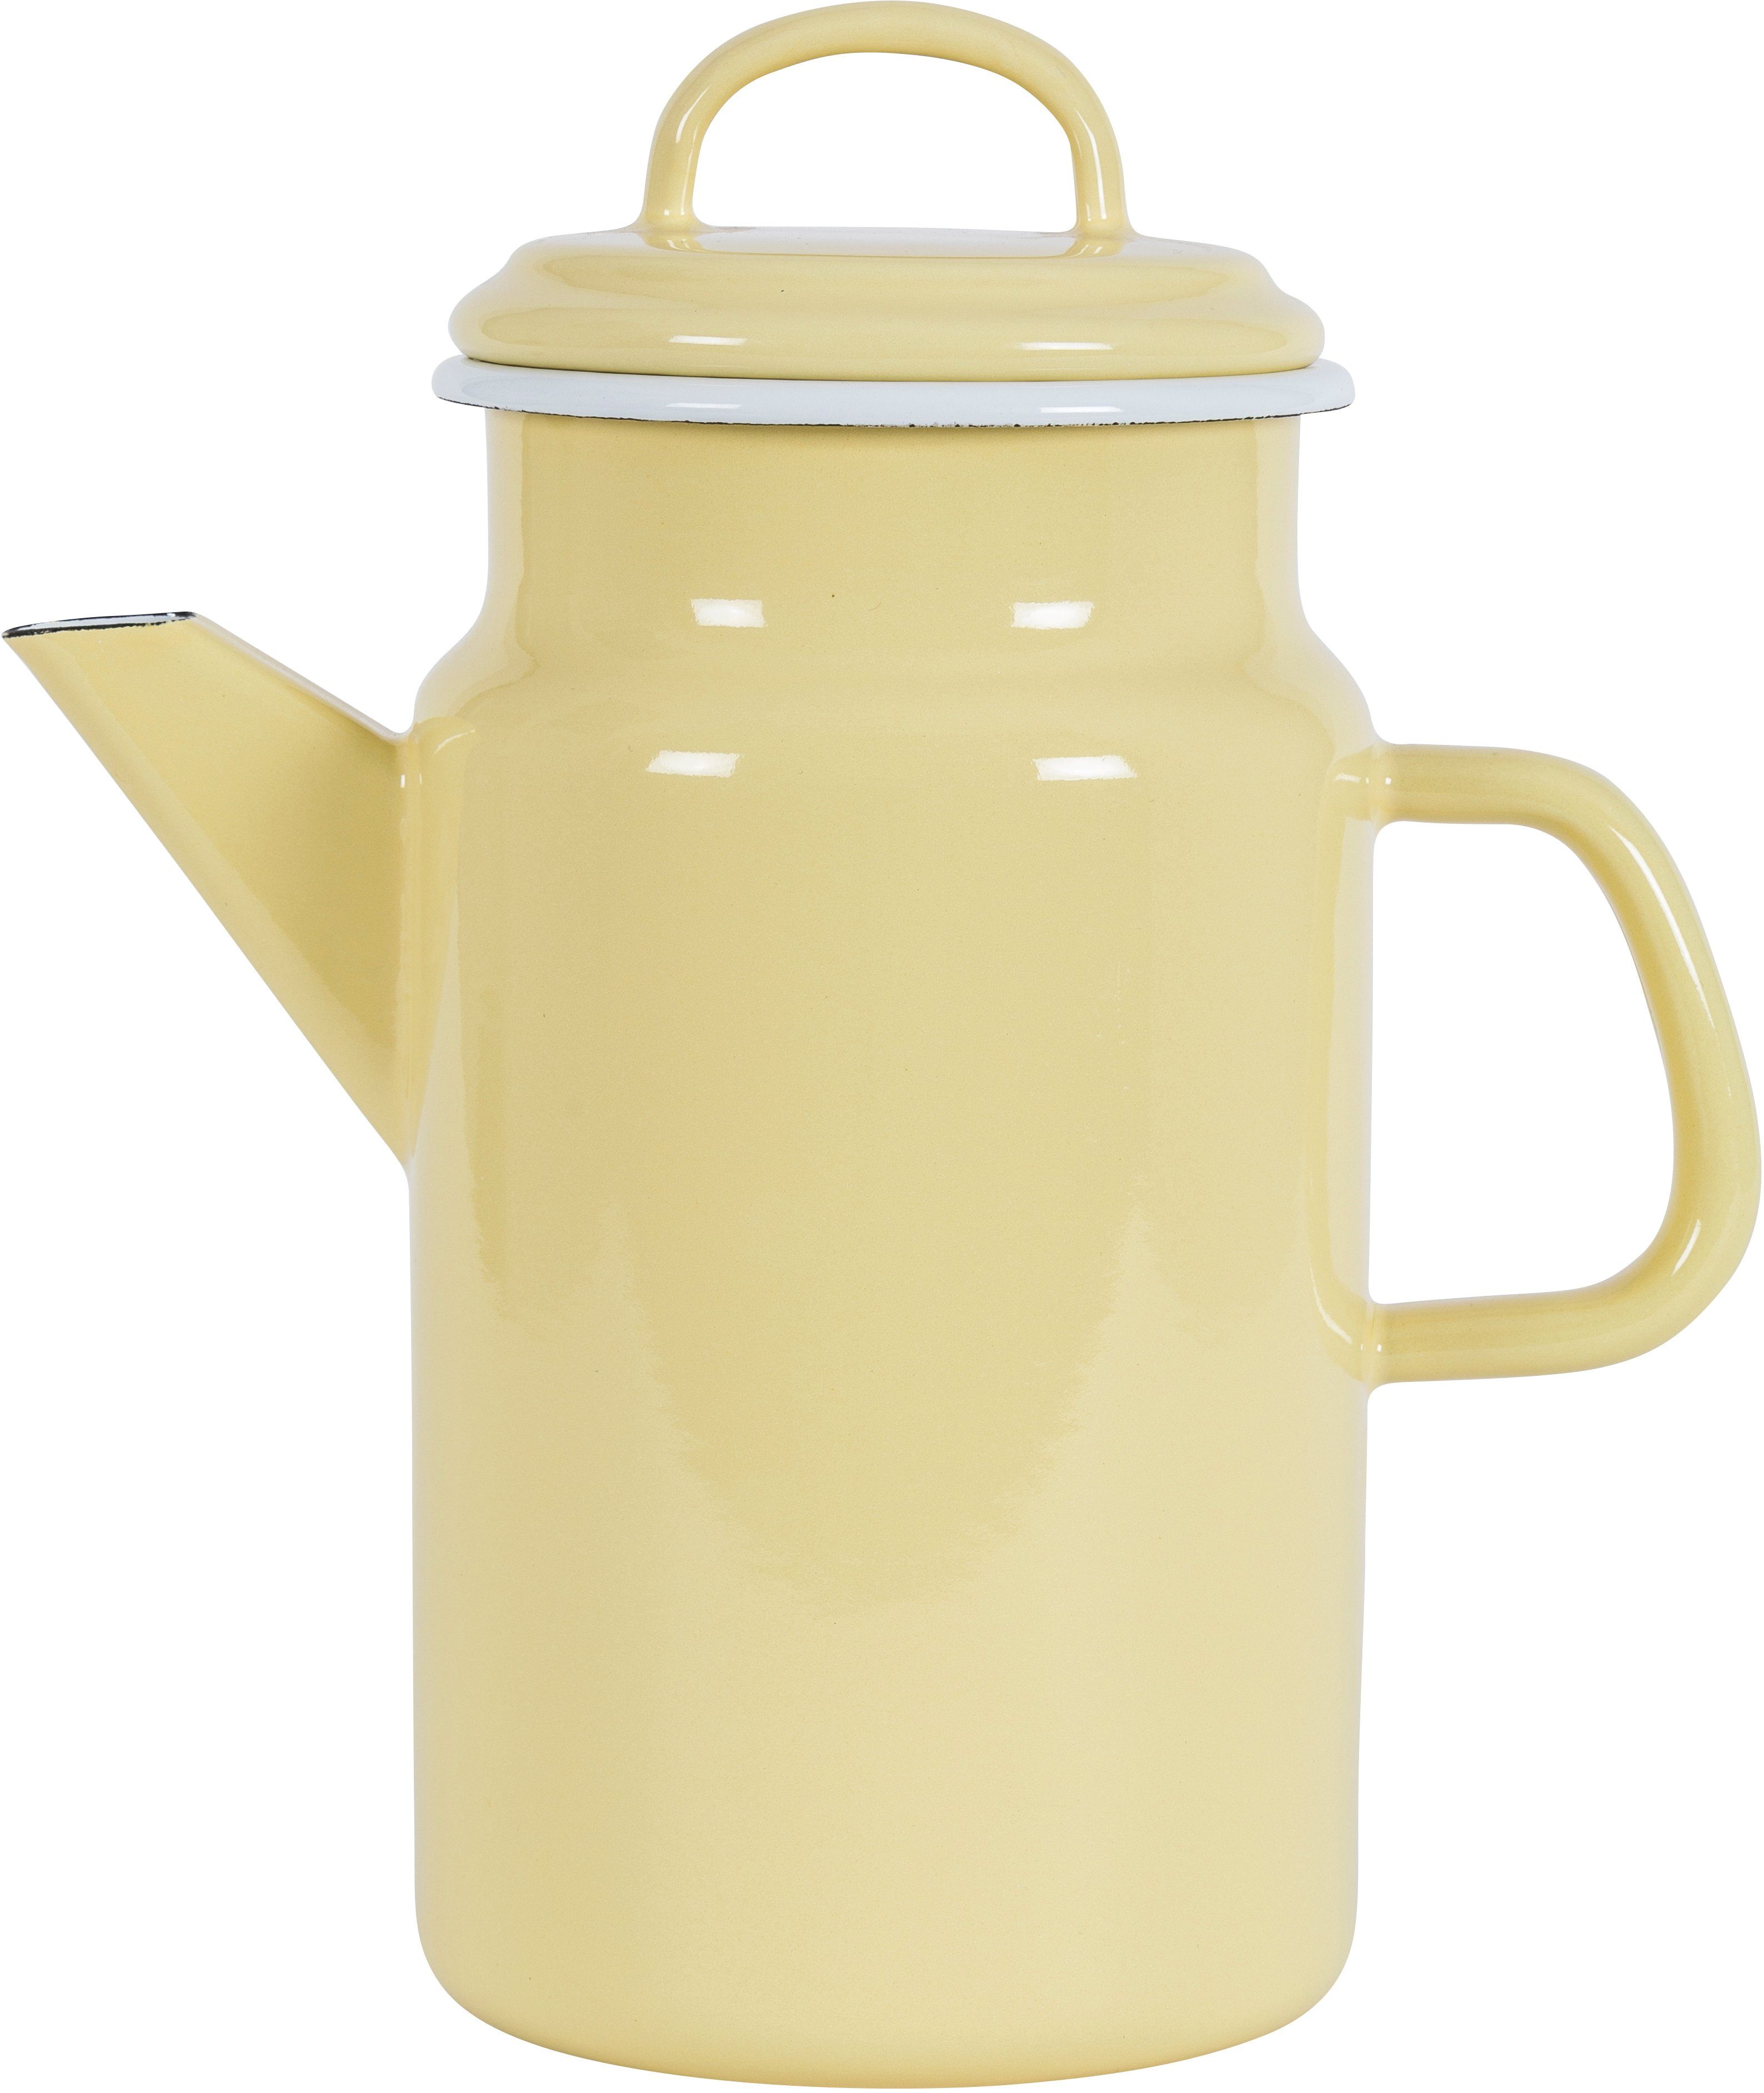 KOCKUMS® Teekanne Jernverk, 2 l, Emaille, und Retro-Design gelb Nachhaltigkeit vereint einer Teekanne in